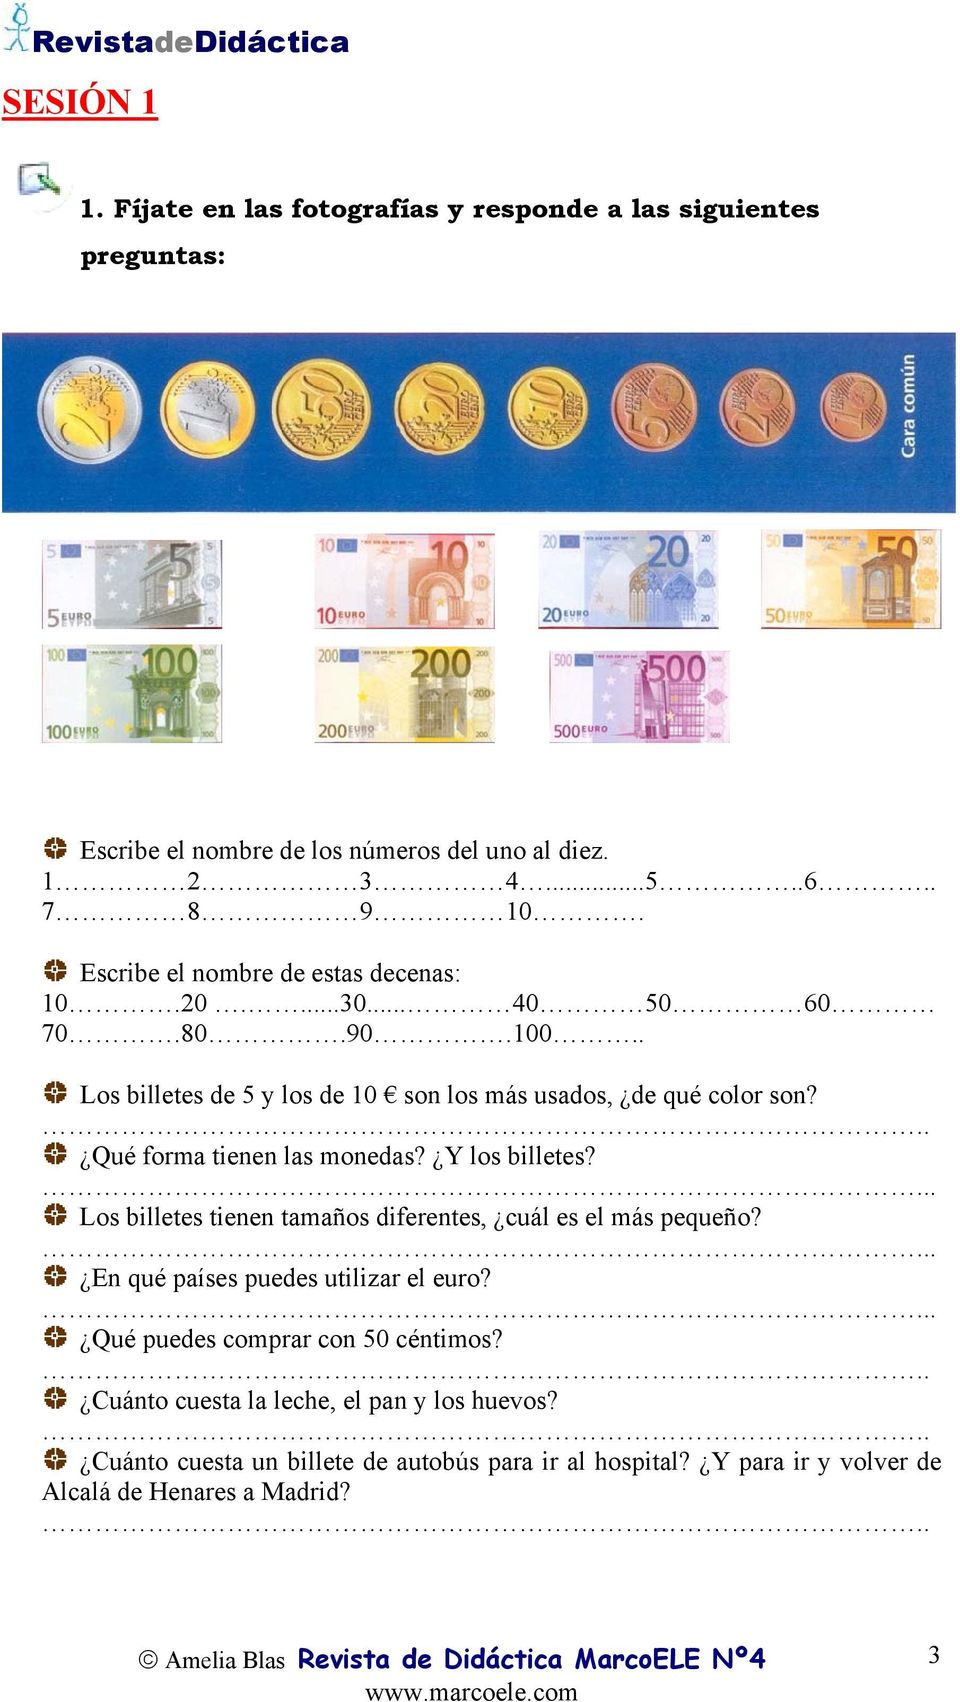 .. Qué forma tienen las monedas? Y los billetes?... Los billetes tienen tamaños diferentes, cuál es el más pequeño?... En qué países puedes utilizar el euro?